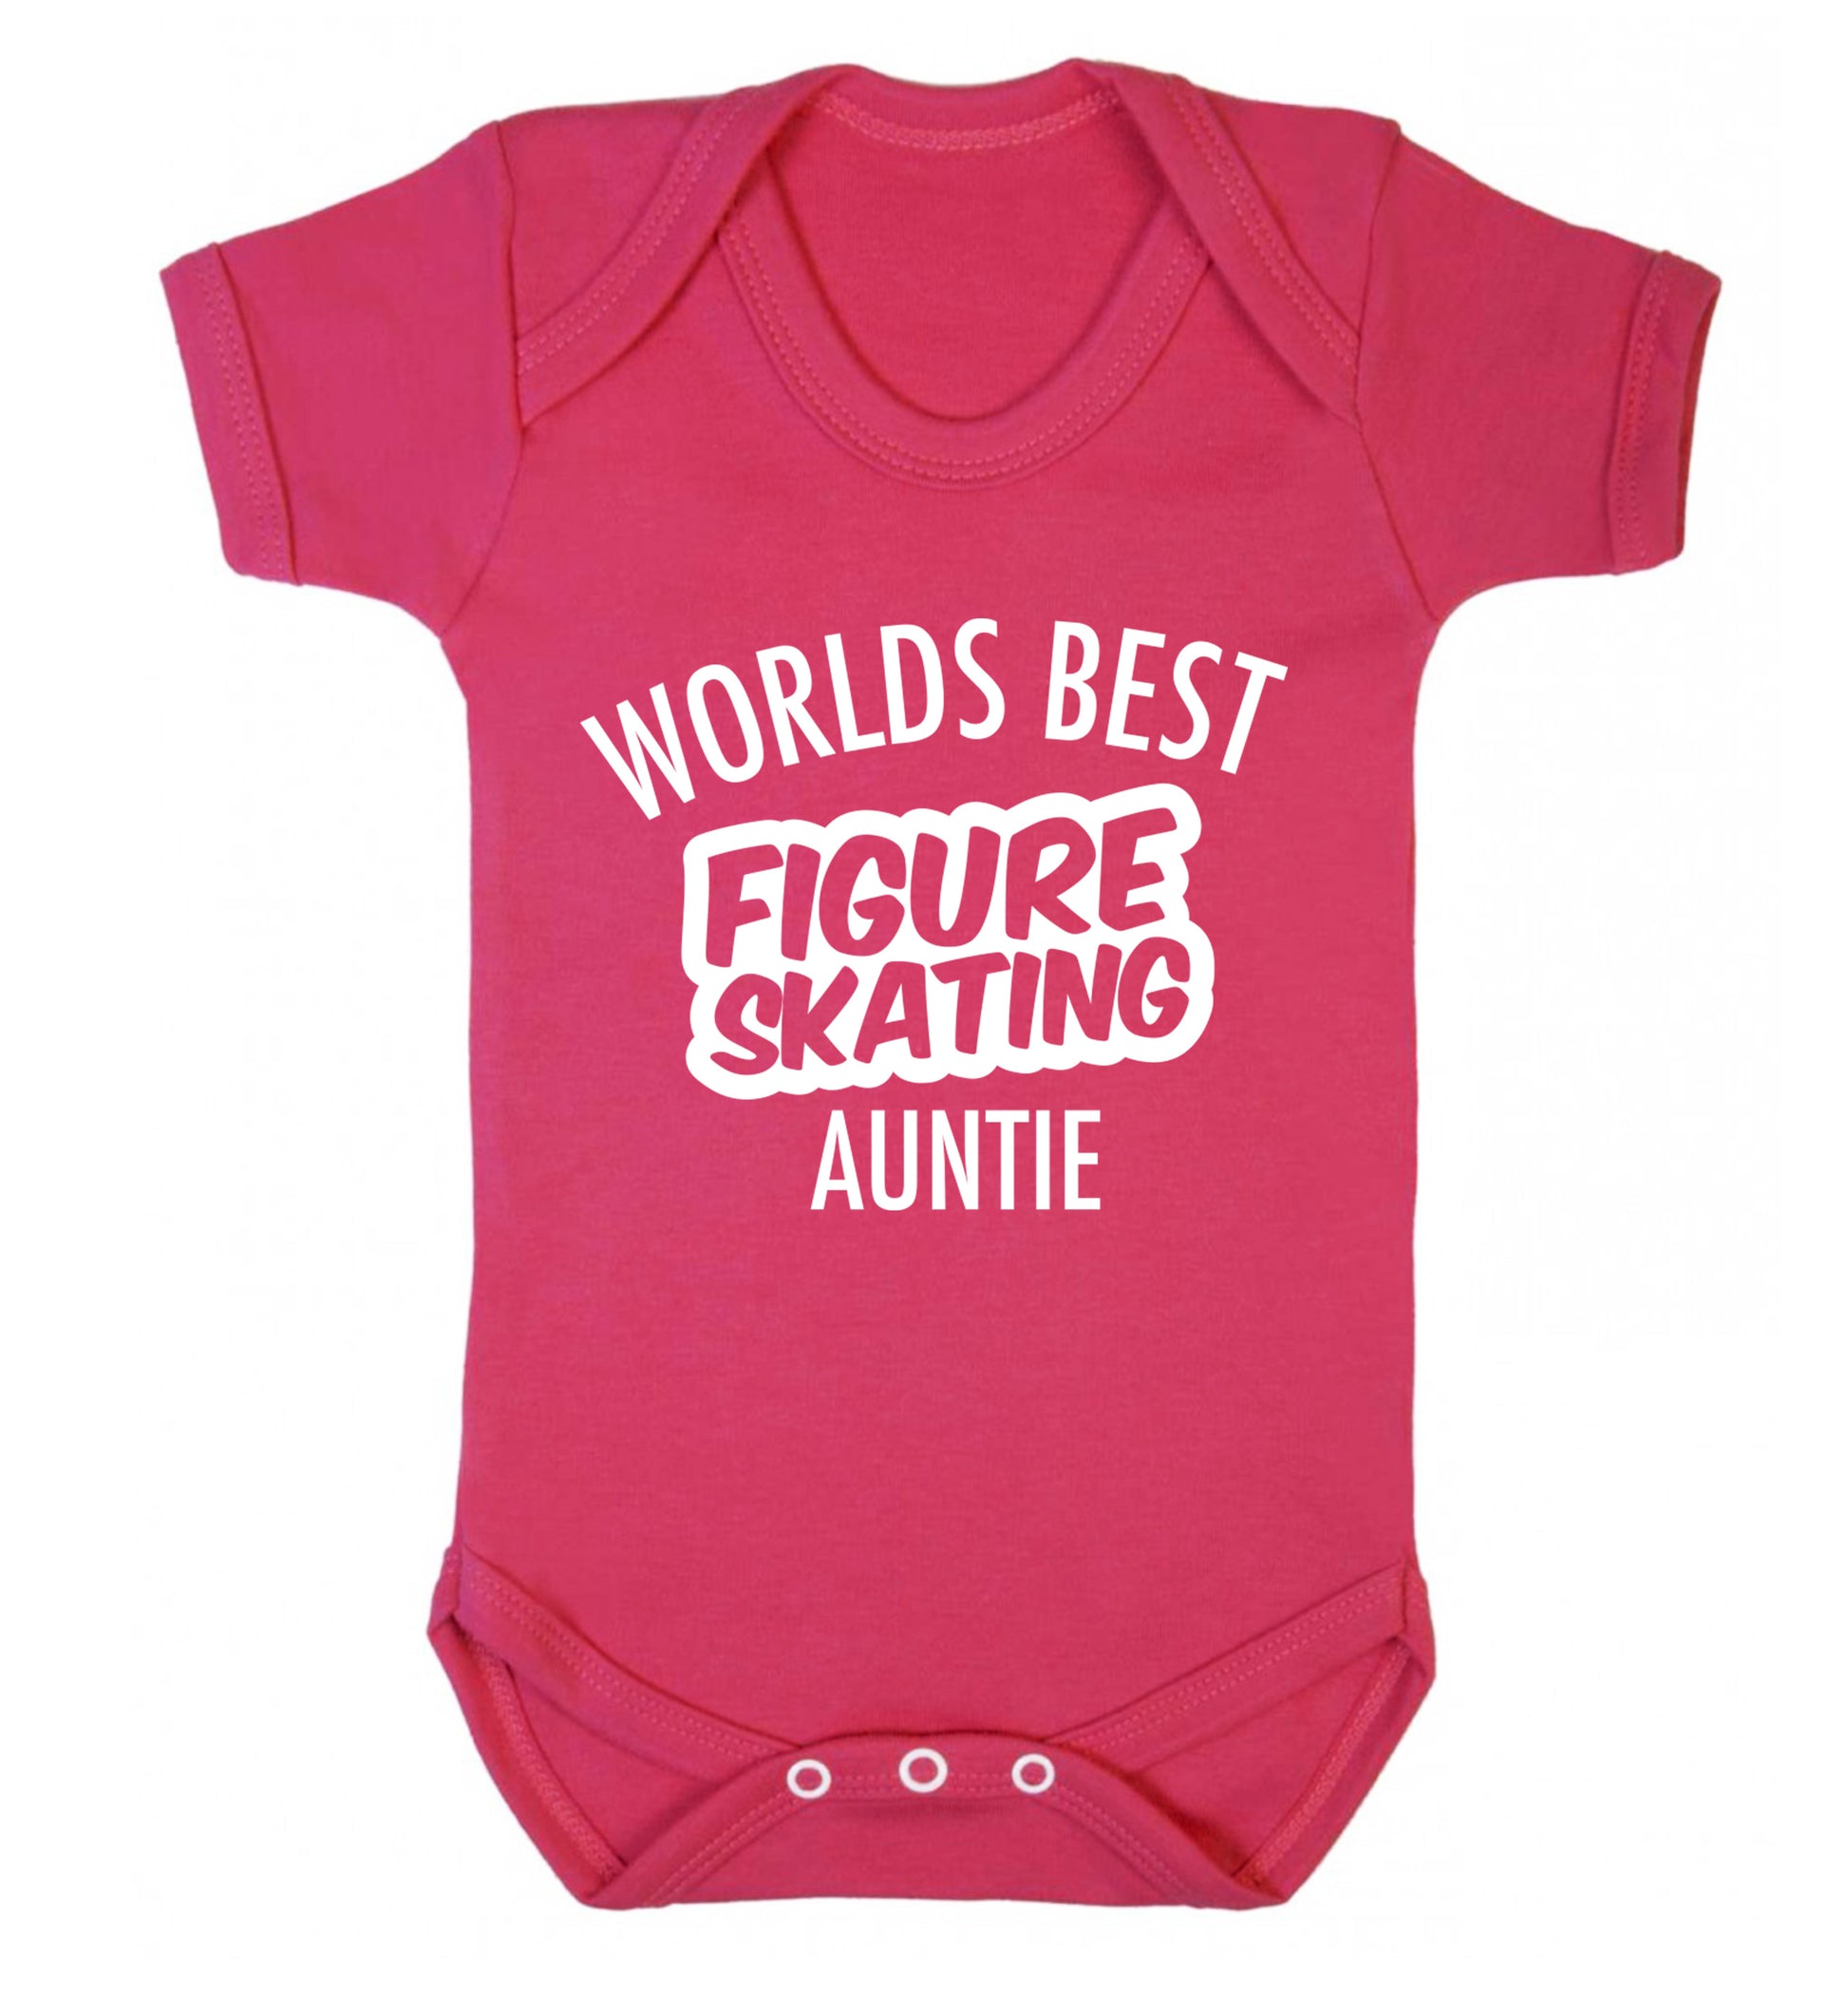 Worlds best figure skating auntie Baby Vest dark pink 18-24 months